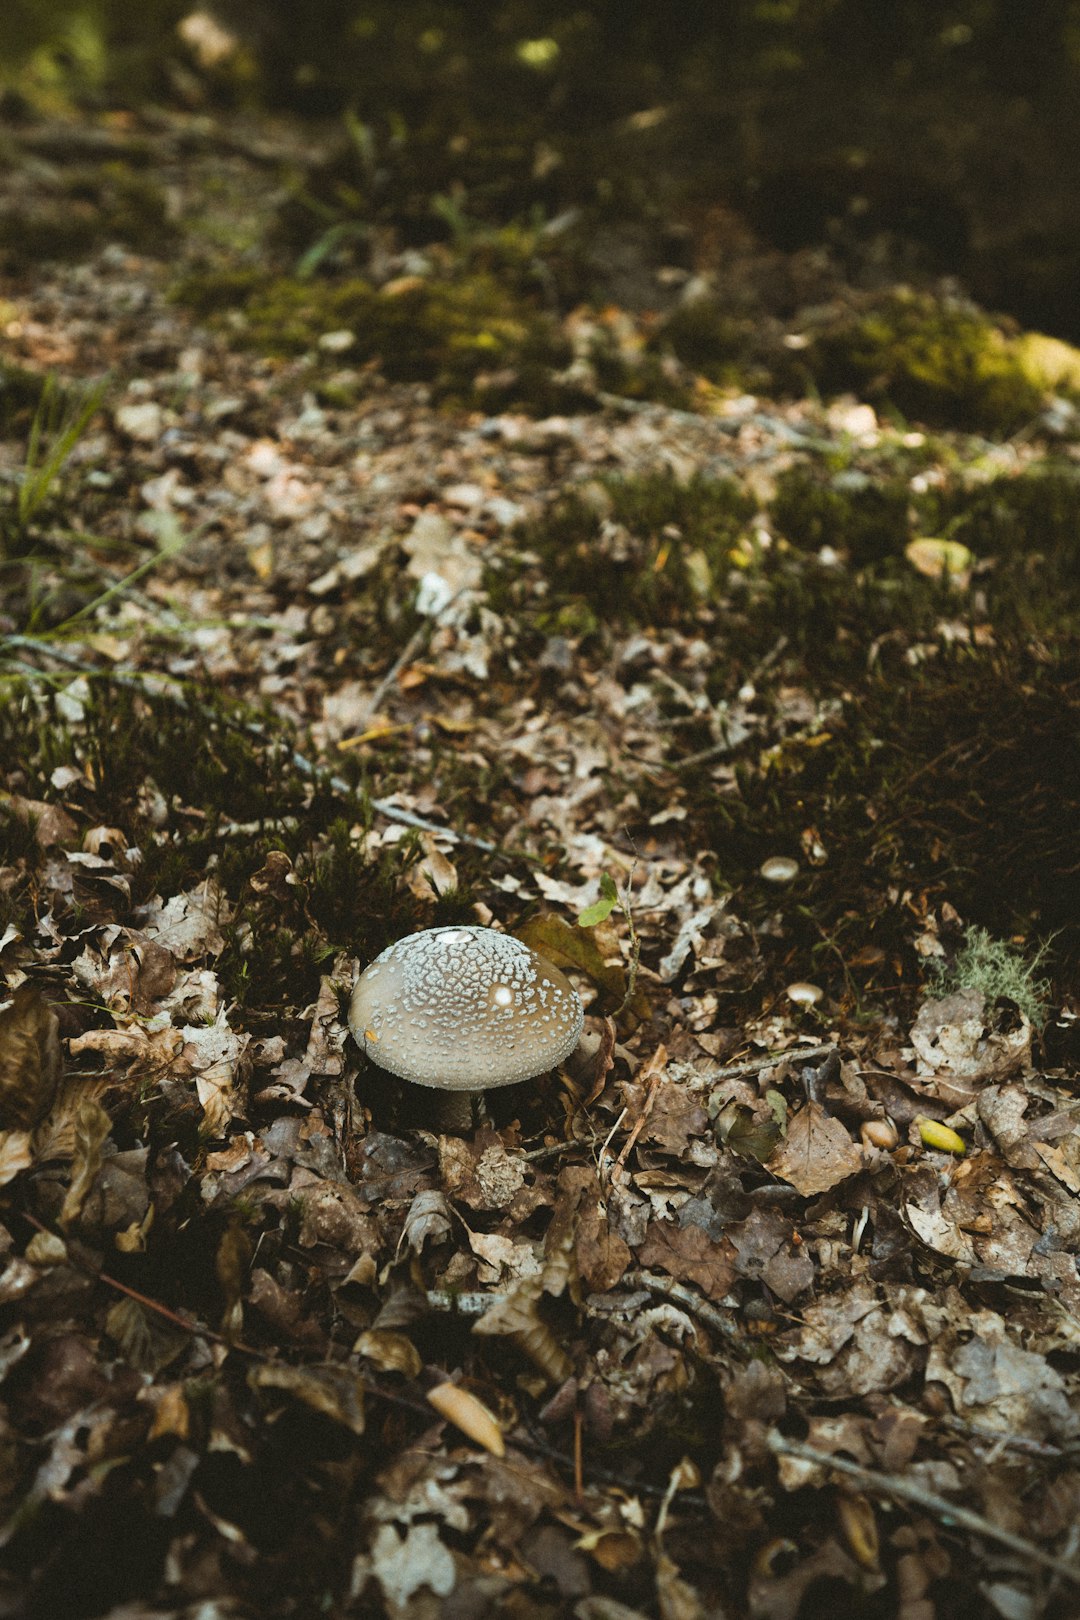 white and gray mushroom on ground